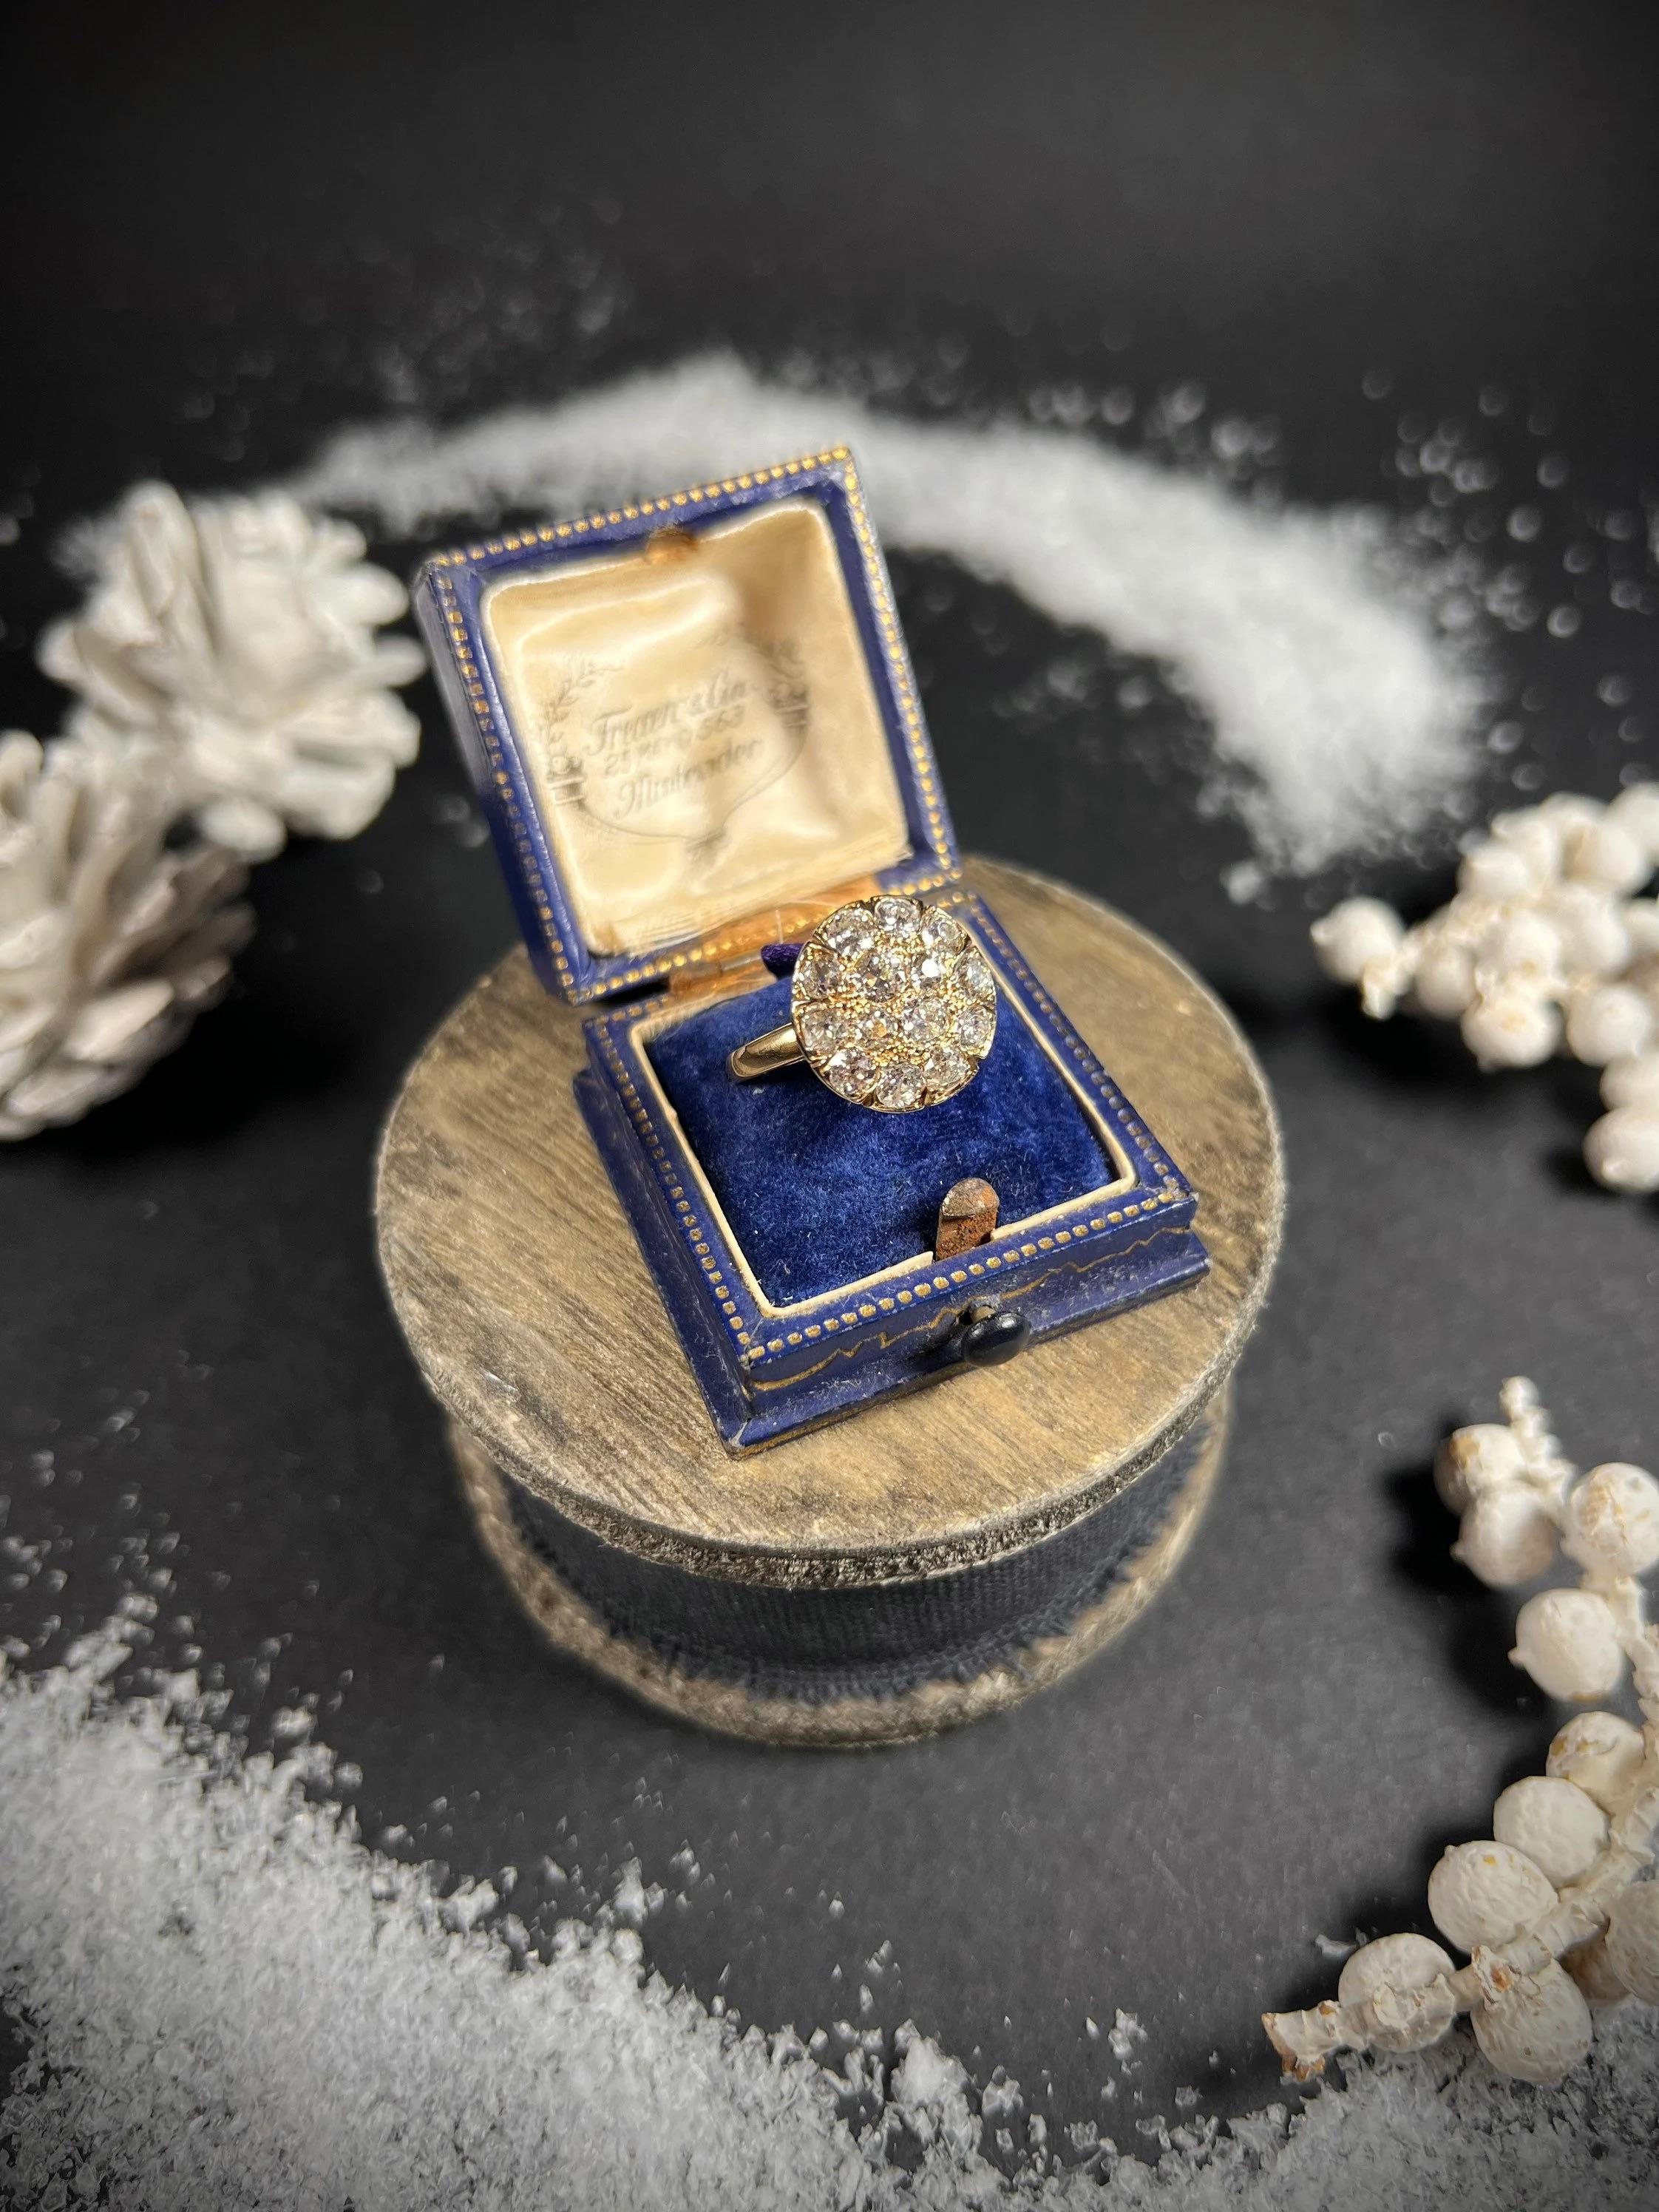 Bague en forme de grappe à l'ancienne 

Or 18 carats

Circa 1870

Fabuleuse bague victorienne en forme de grappe. Environ 1,60cts de magnifiques diamants naturels sertis dans de l'or jaune 18ct. 

La face de l'anneau mesure environ 14 mm de